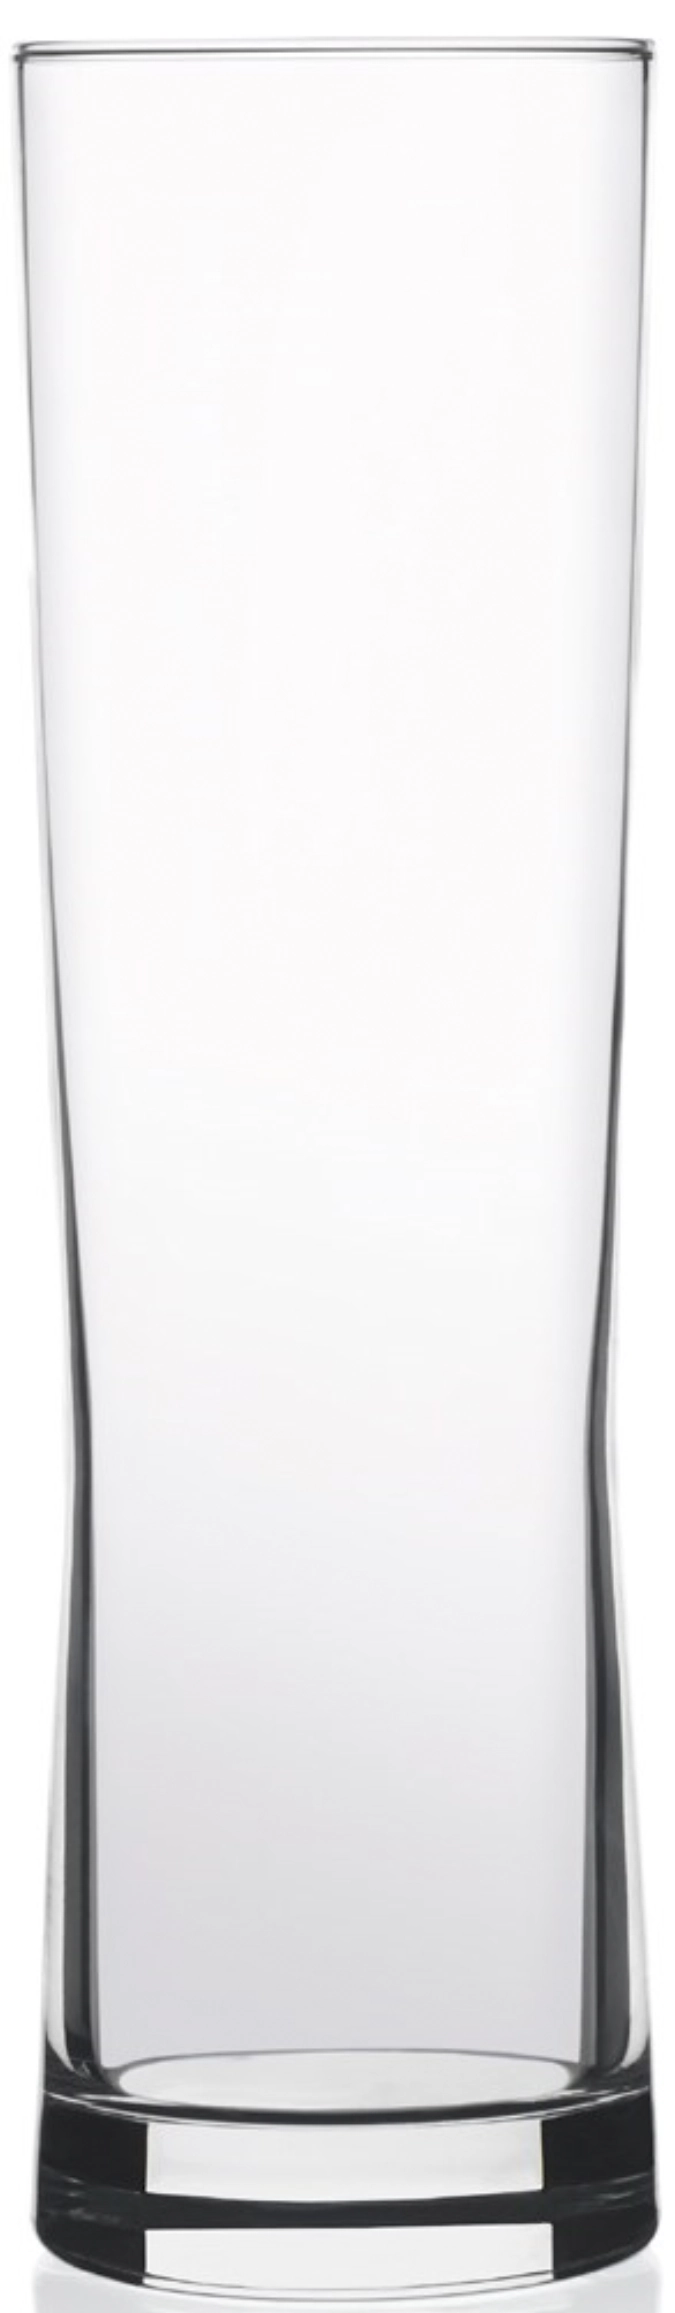 Fresh Glas-Becher 64cl, 5 dl /-/ 23.6cm